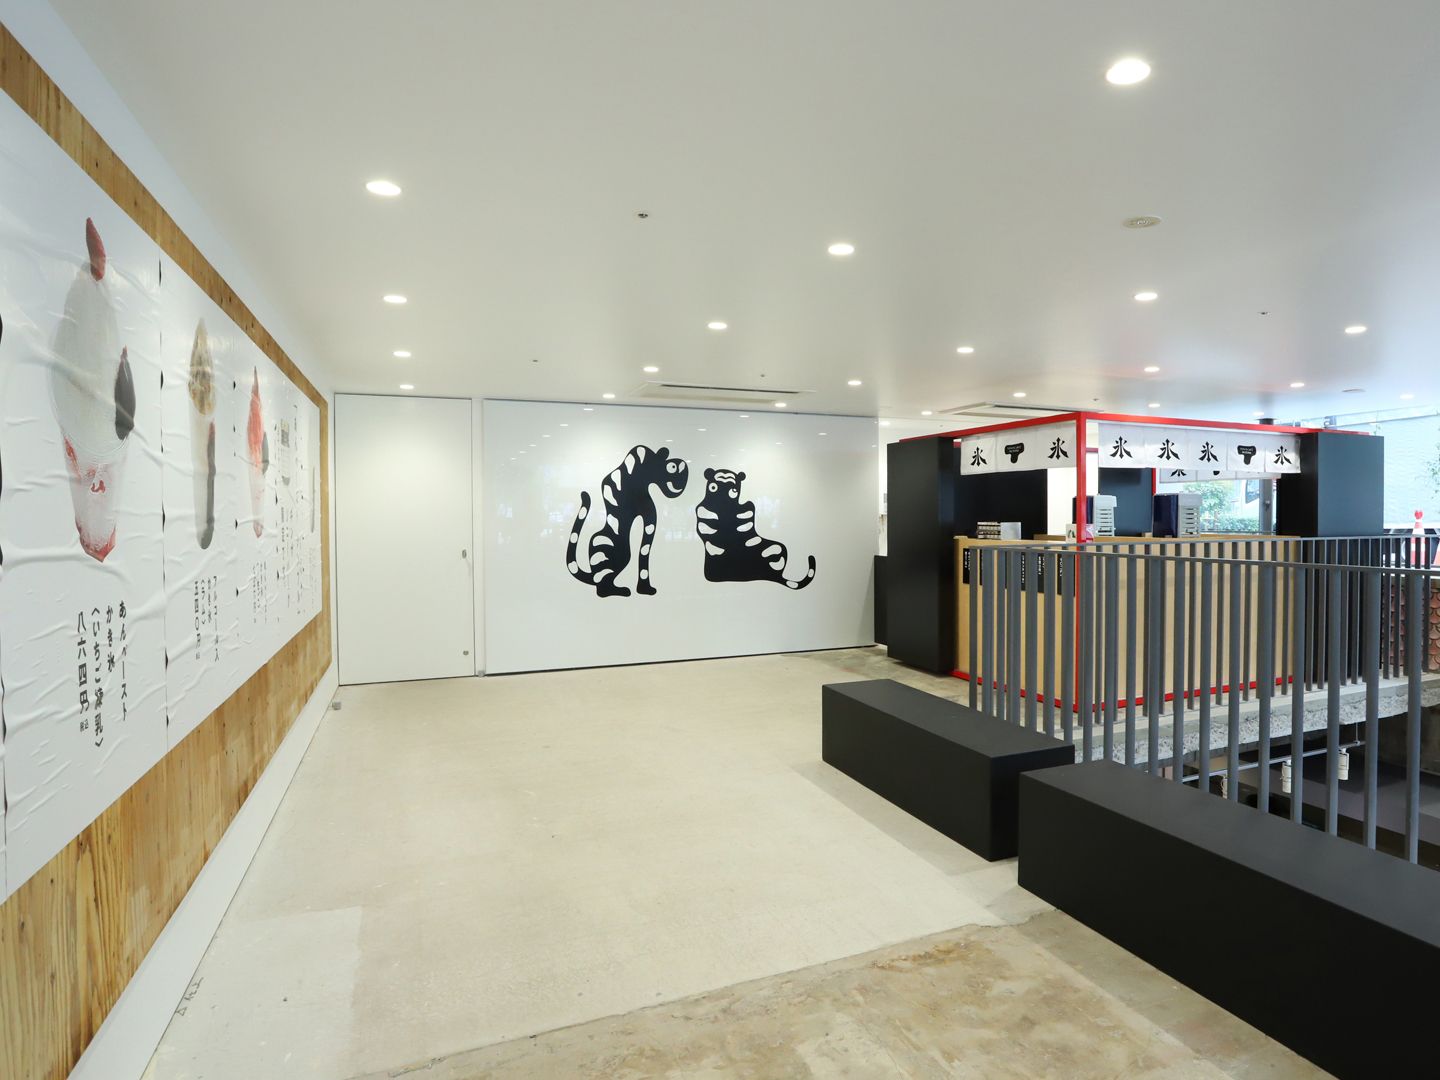 8月9日「トラヤカフェ・あんスタンド銀座店」がオープンいたします